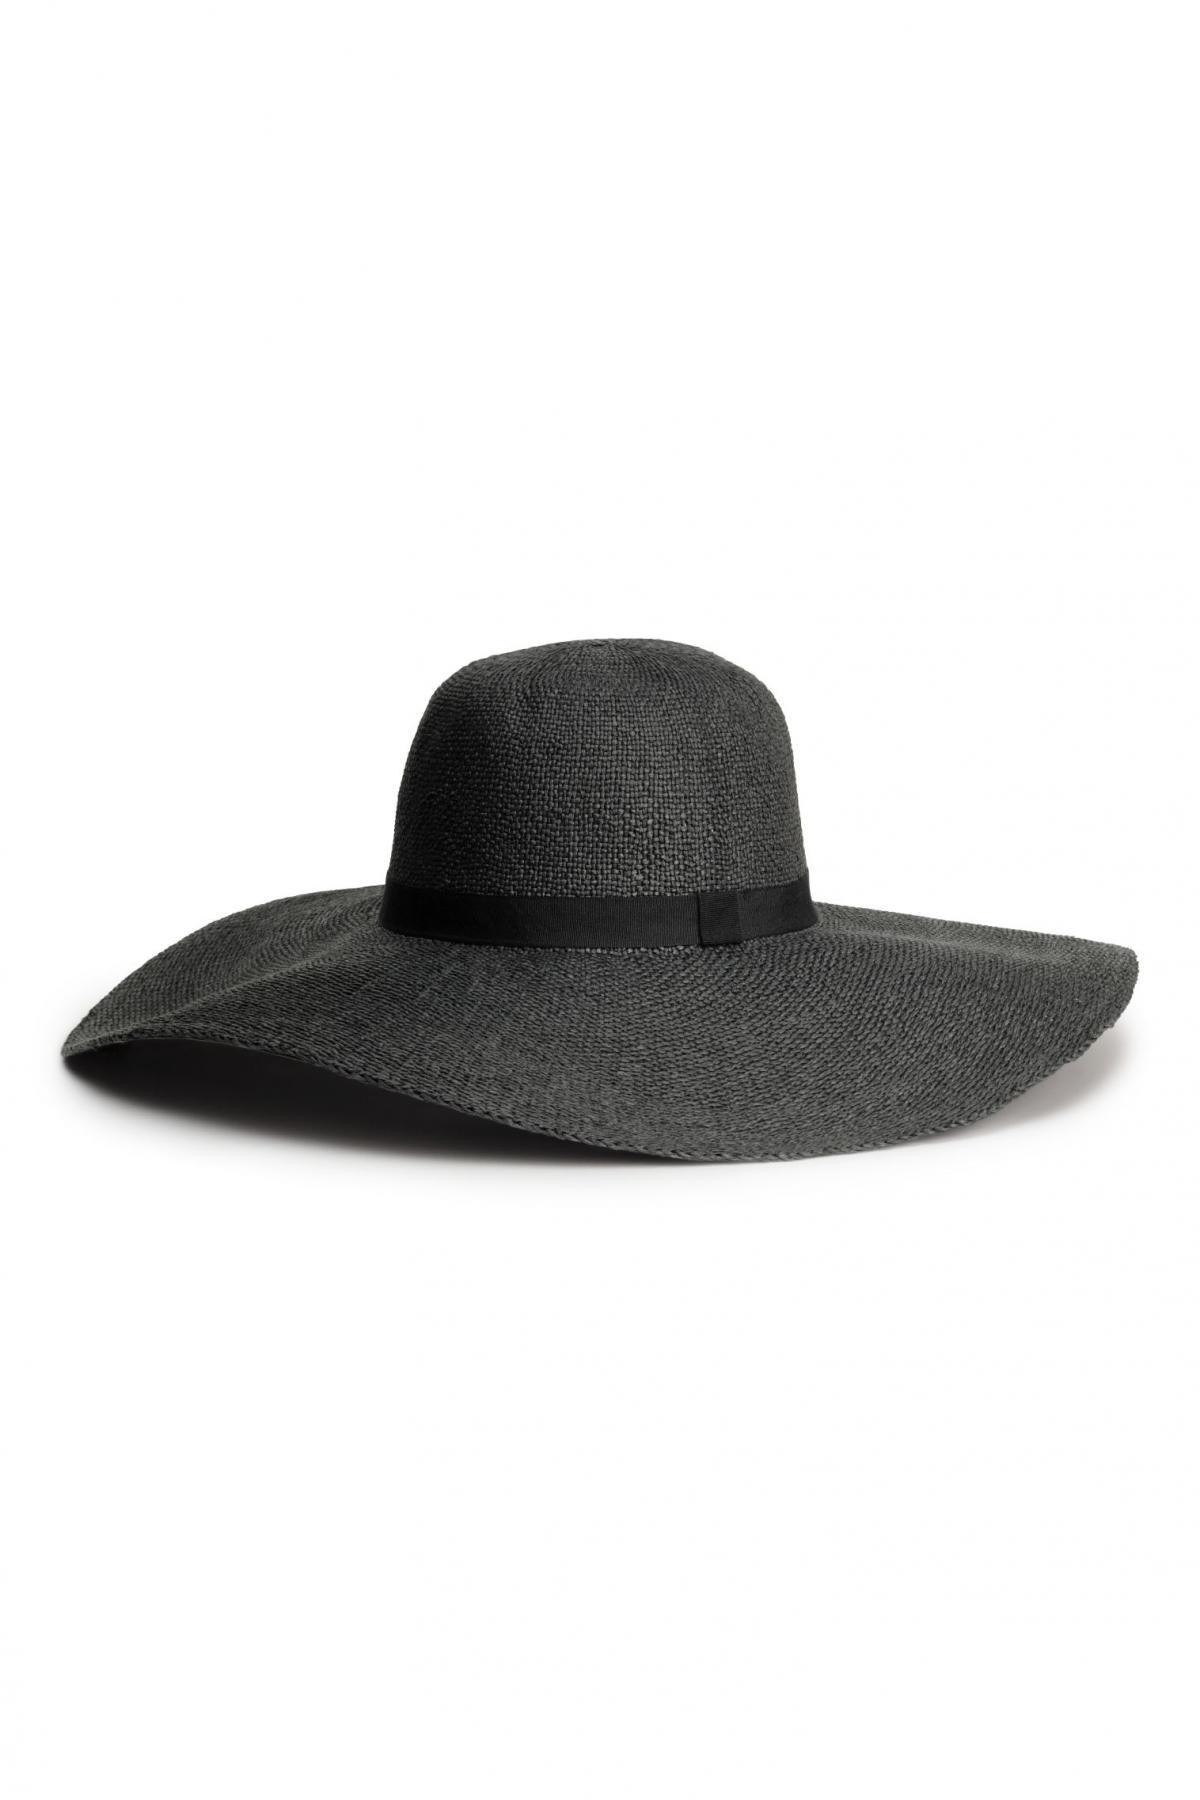 H hat. Шляпа HM. Черная шляпа HM. Шляпа HM женская черная. Шляпа h m мужская.